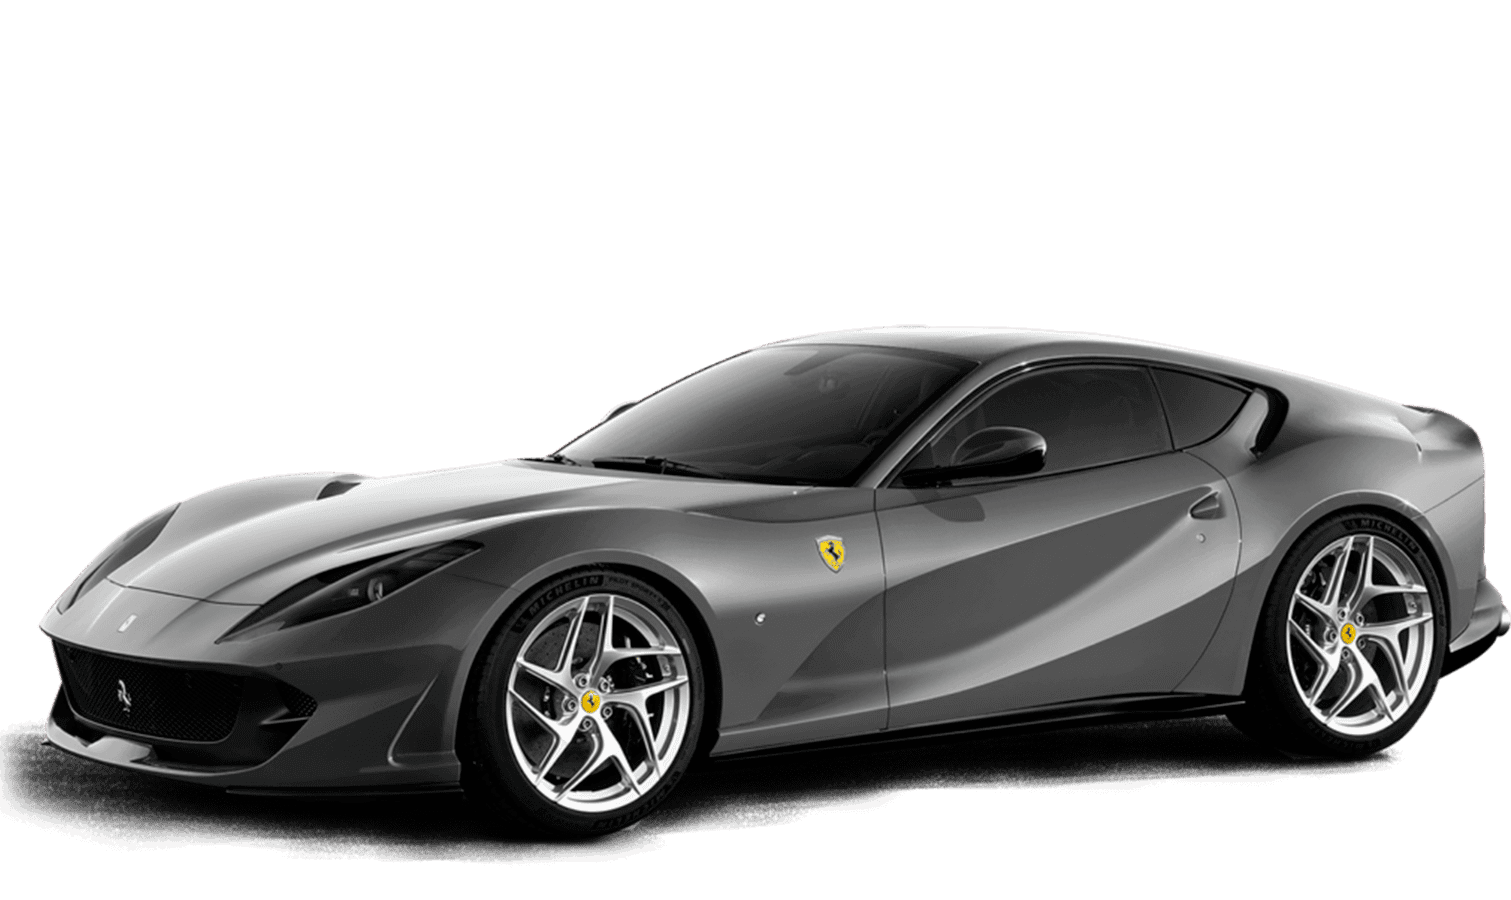 Ferrari 812 Superfast, alquiler de coches de alta gama, deportivos y de lujo